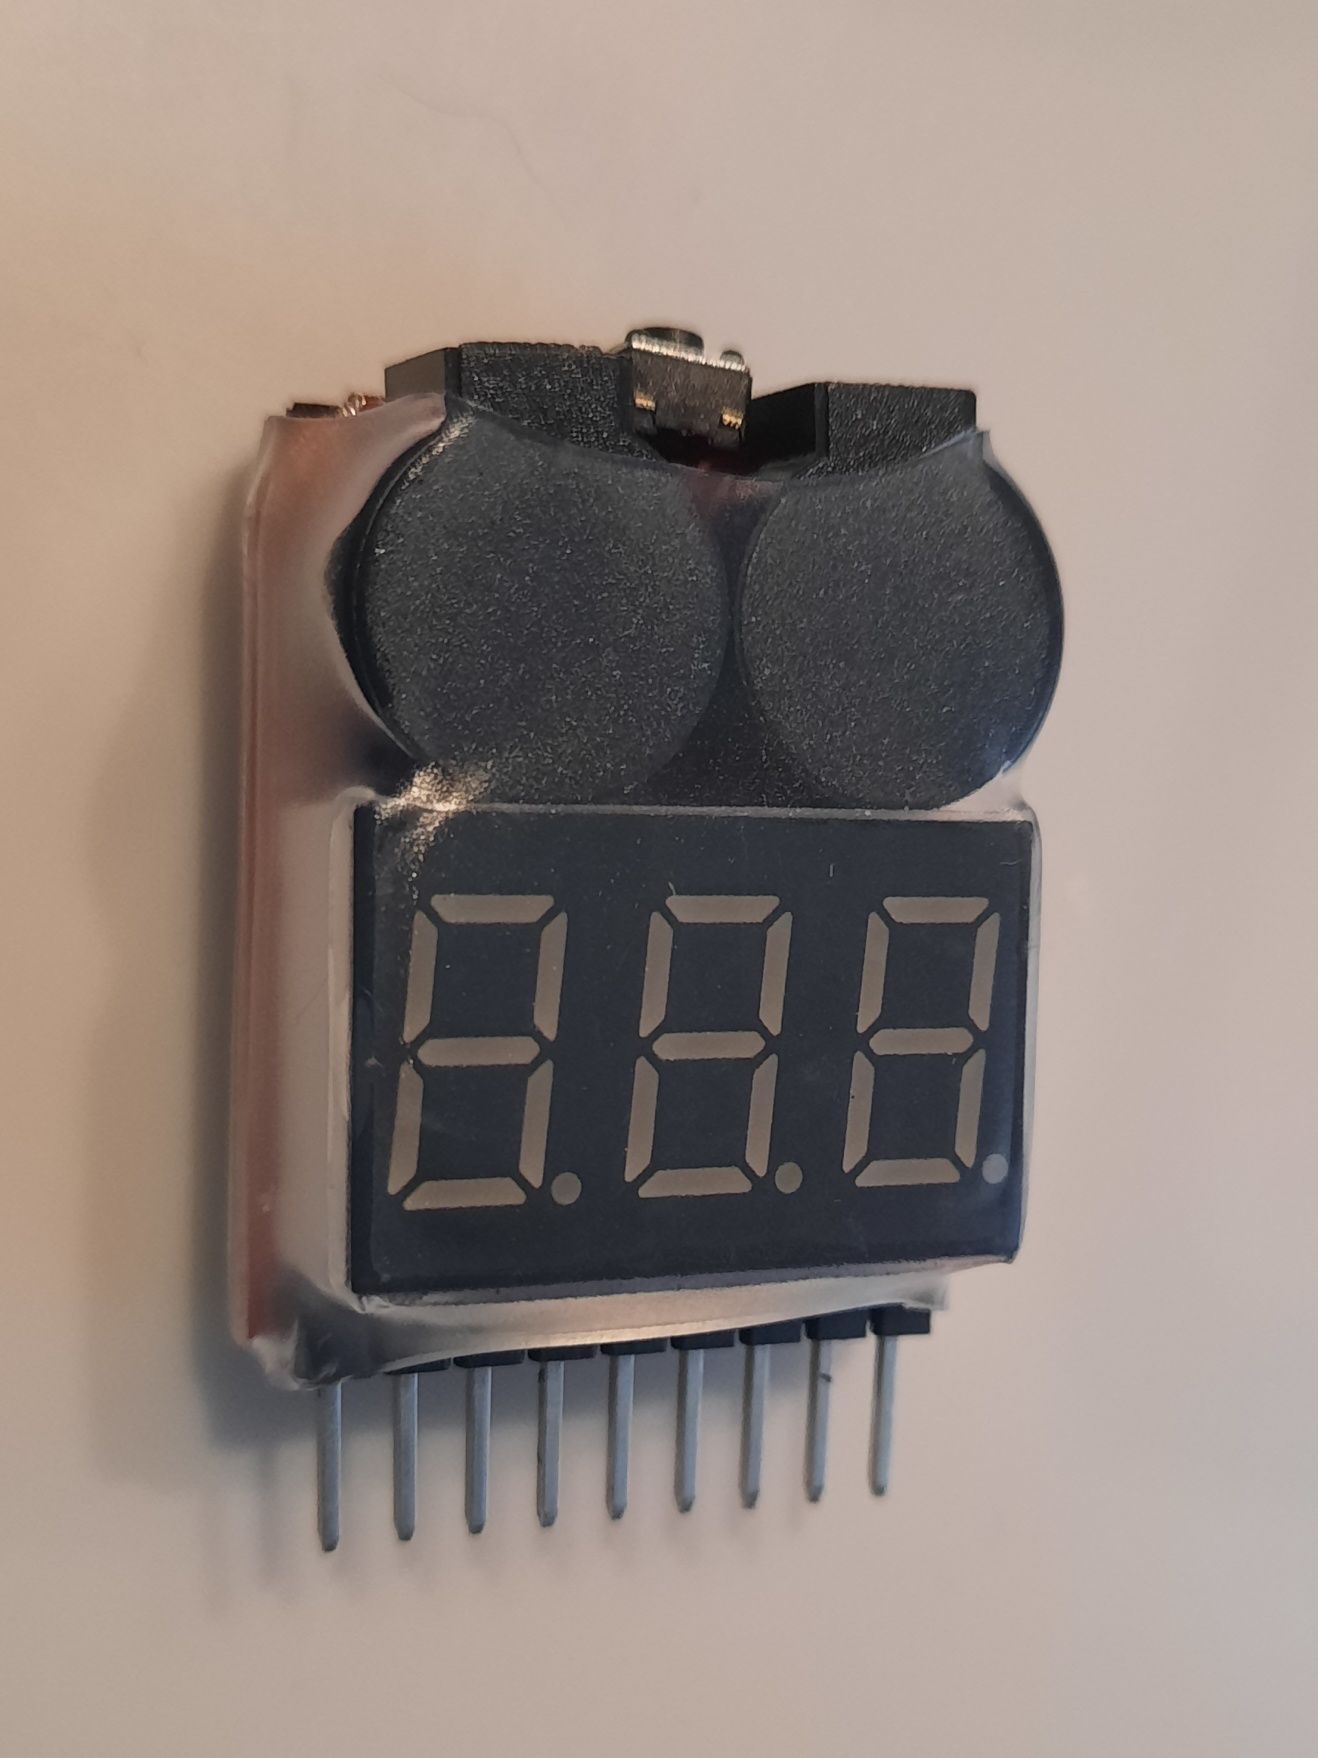 Módulo Display Testador de baterias c/ alarme LiPo/Li-ion/Li-Fe 1-8s